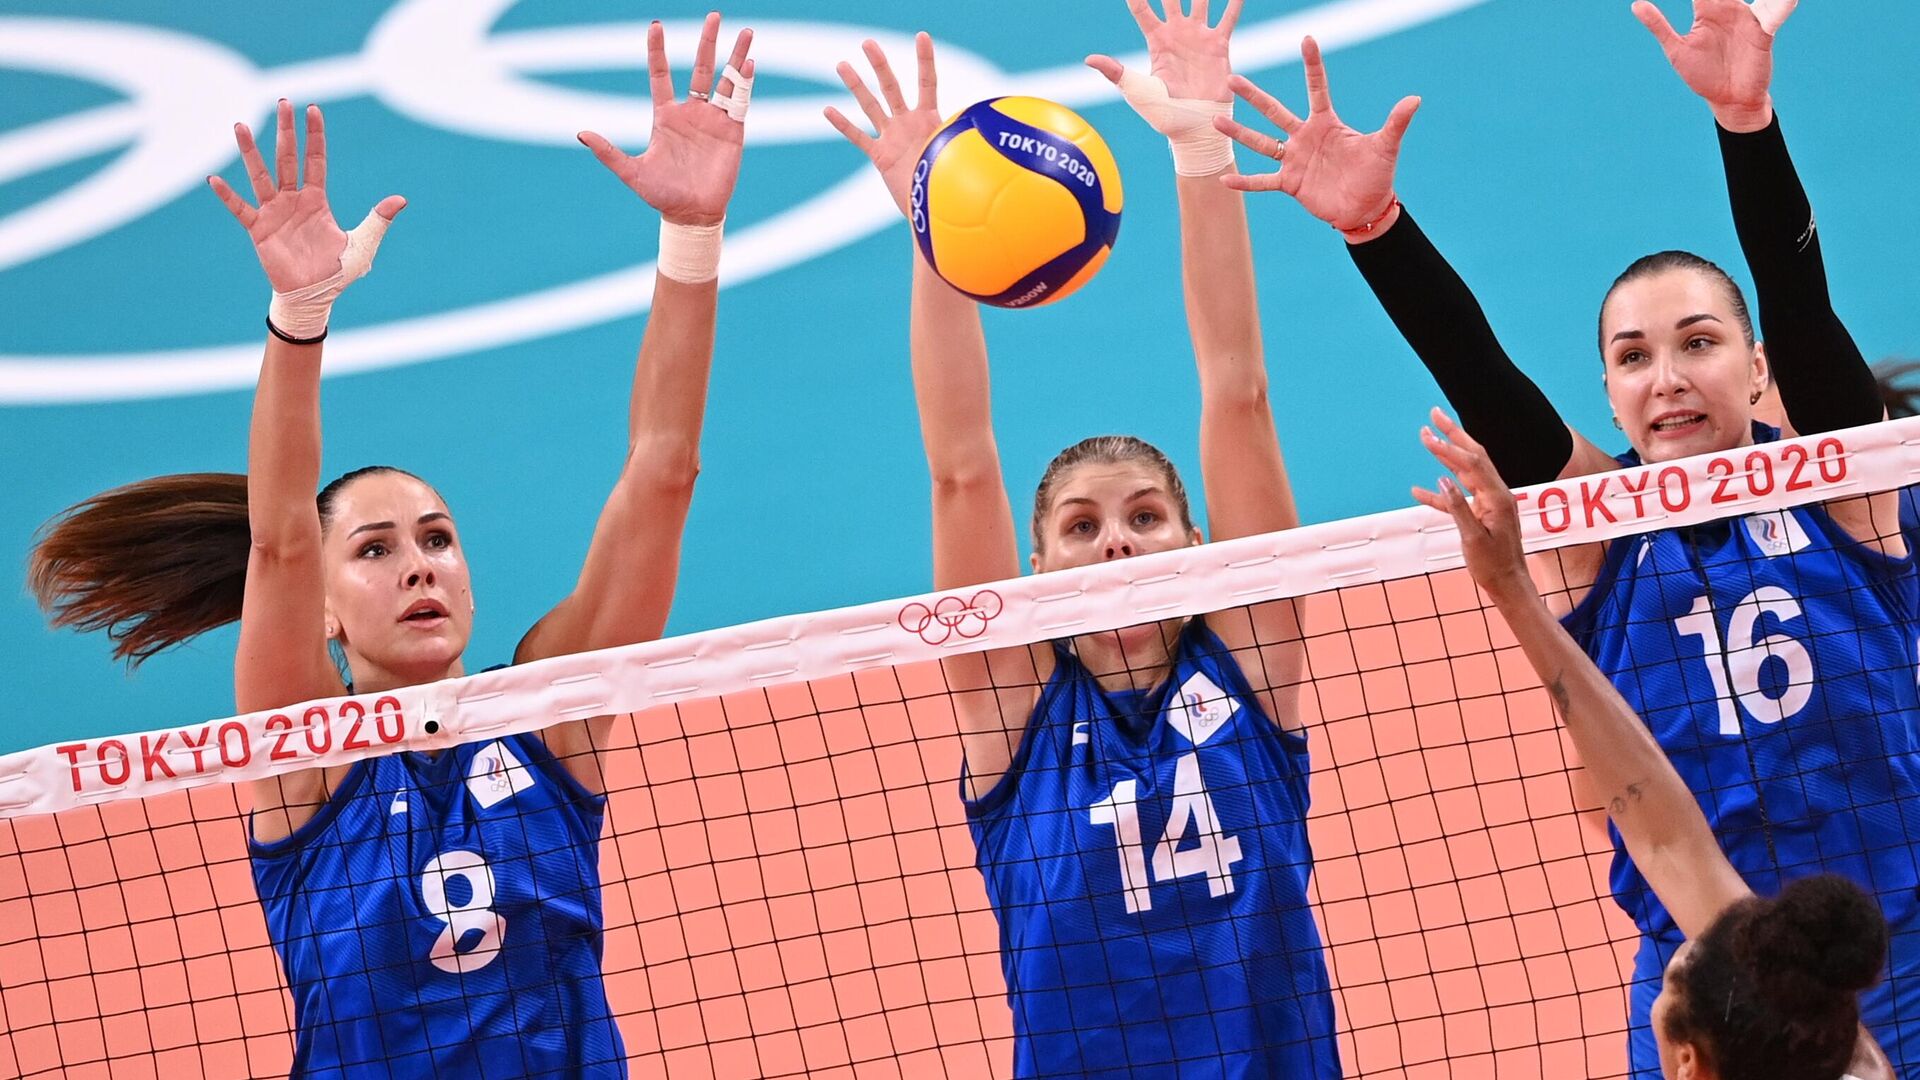 Игры в волейбол женщины. Женская сборная России по волейболу на Олимпийских играх Токио.